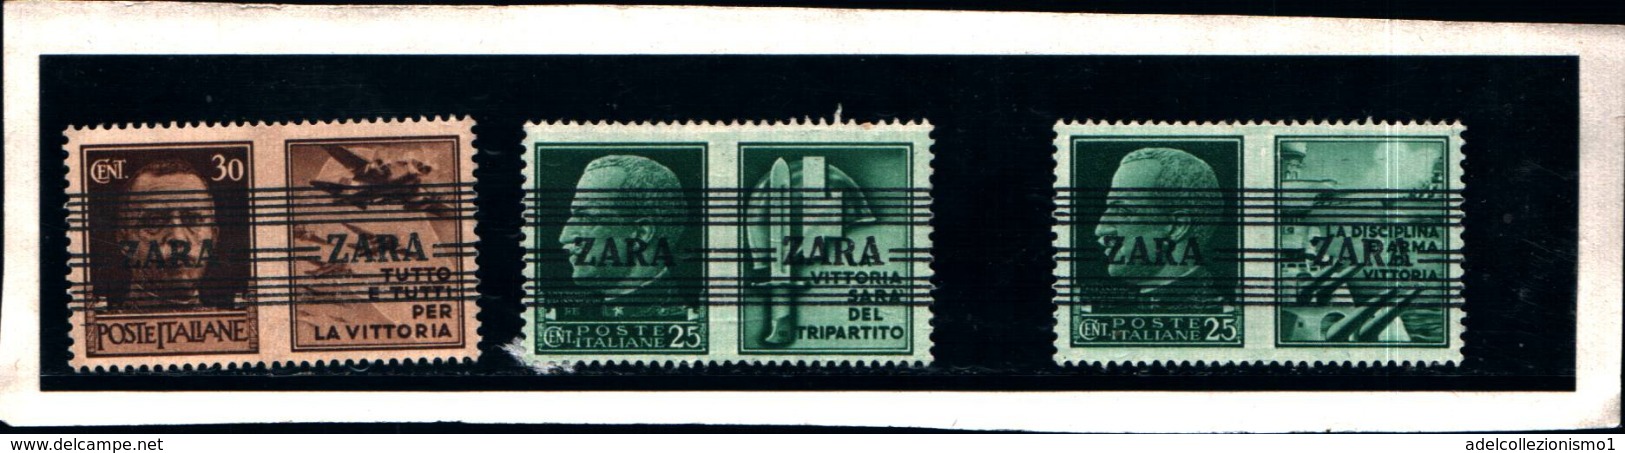 6948B) ITALIA- Zara, Serie Di Propaganda Con Righe Orizzontali - 4 Novembre 1943-3 VALORI - MNH** - Deutsche Bes.: Zara